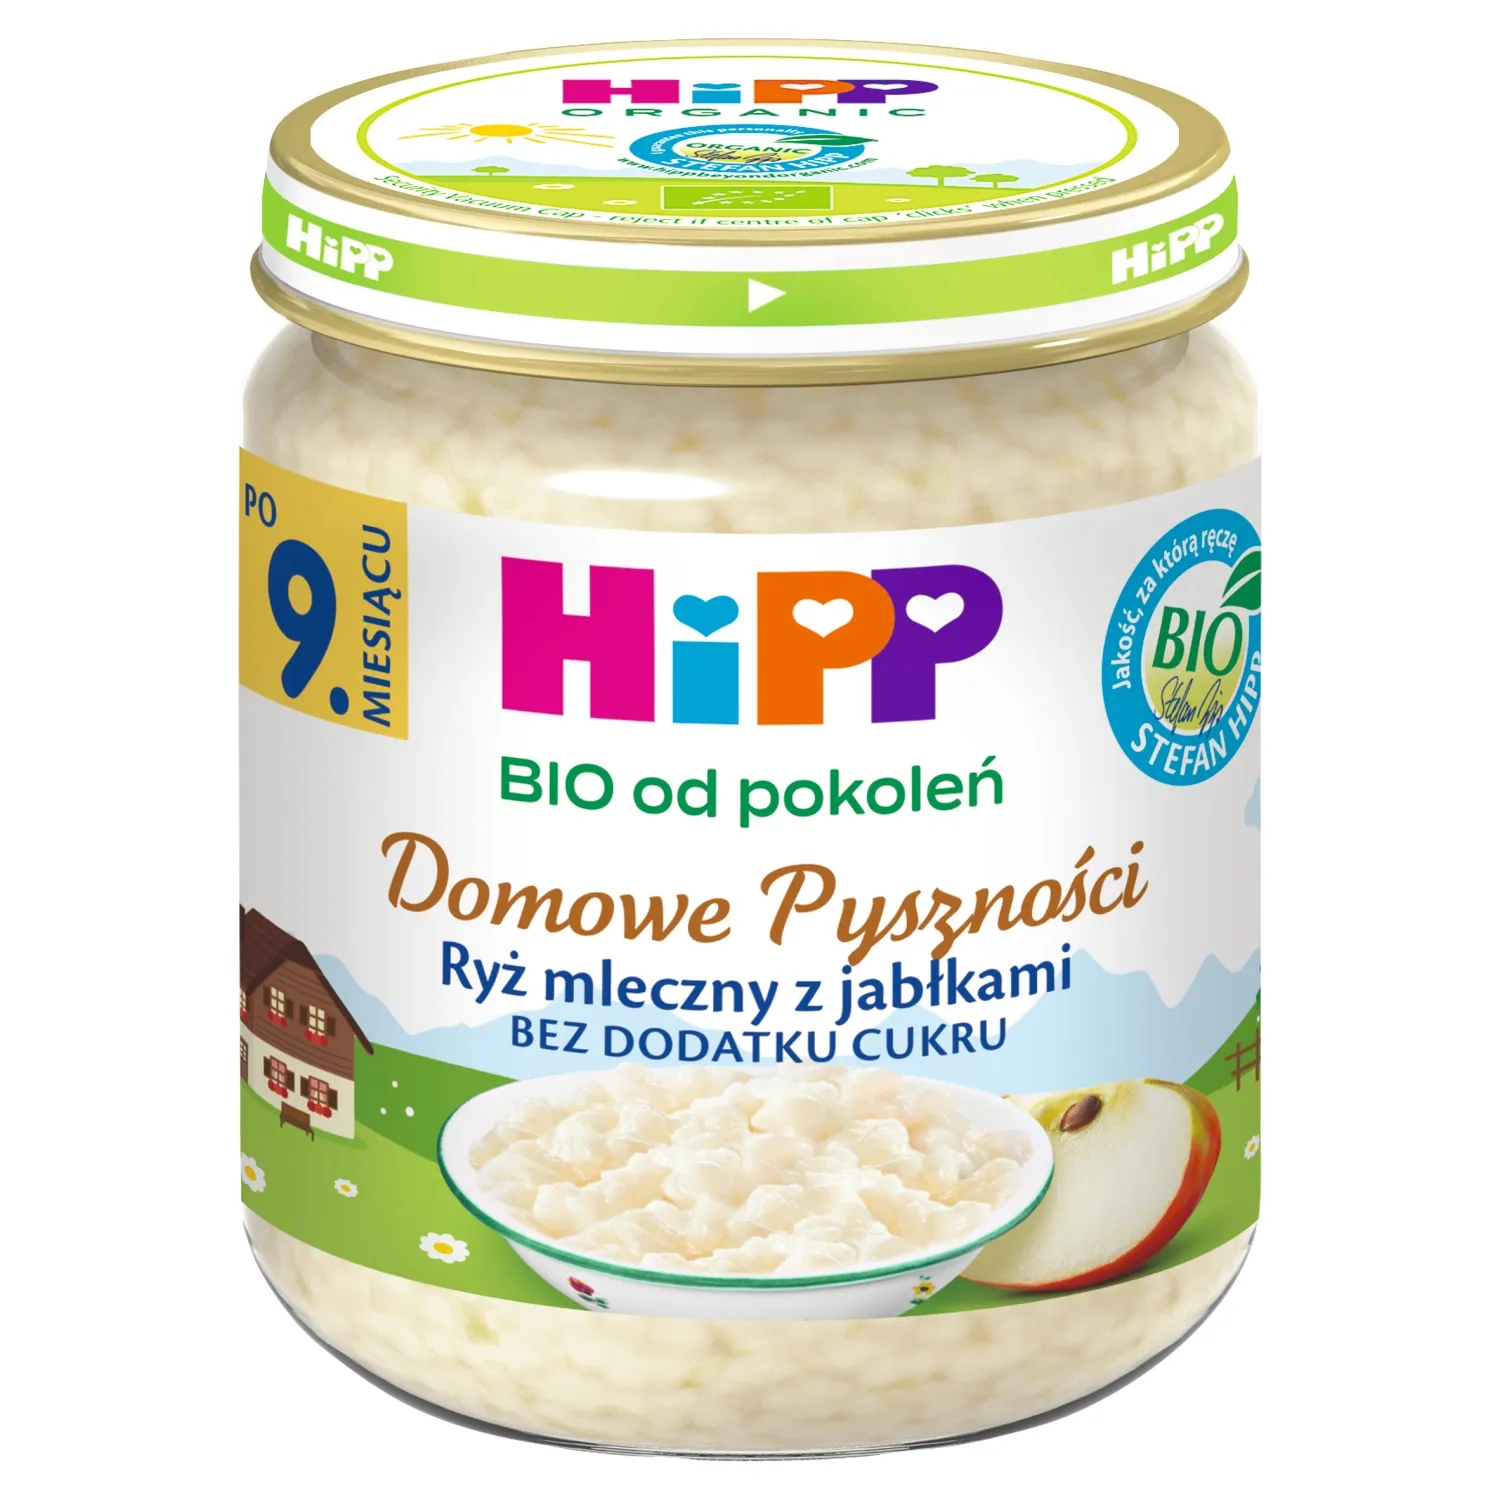 HiPP BIO Ryż mleczny z jabłkami po 9. miesiącu, 200 g